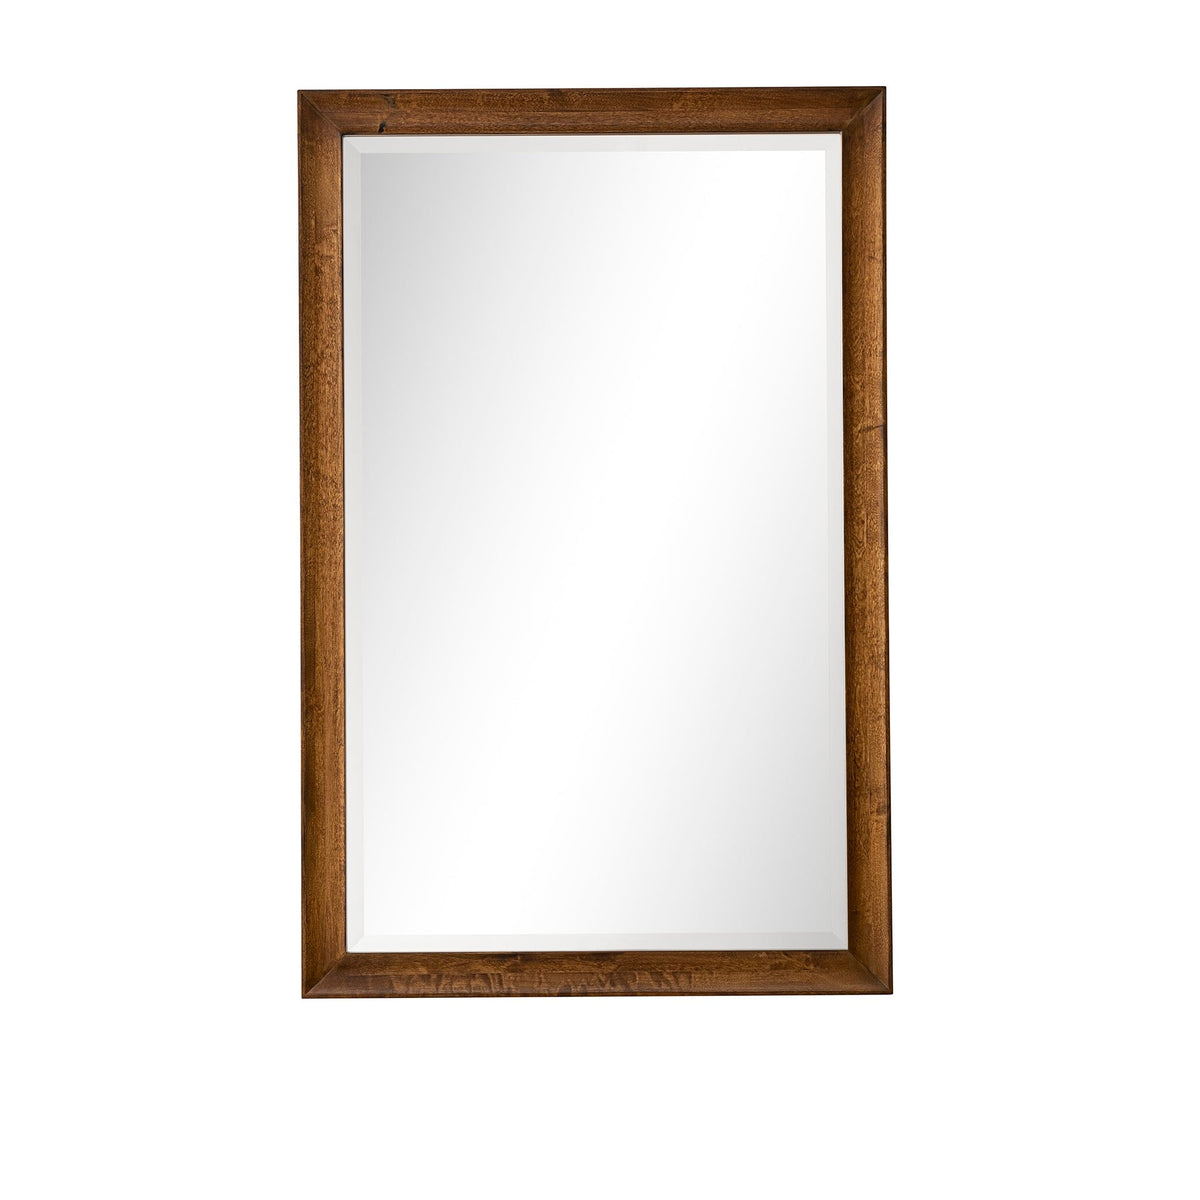 26" Glenbrooke Mirror, Country Oak